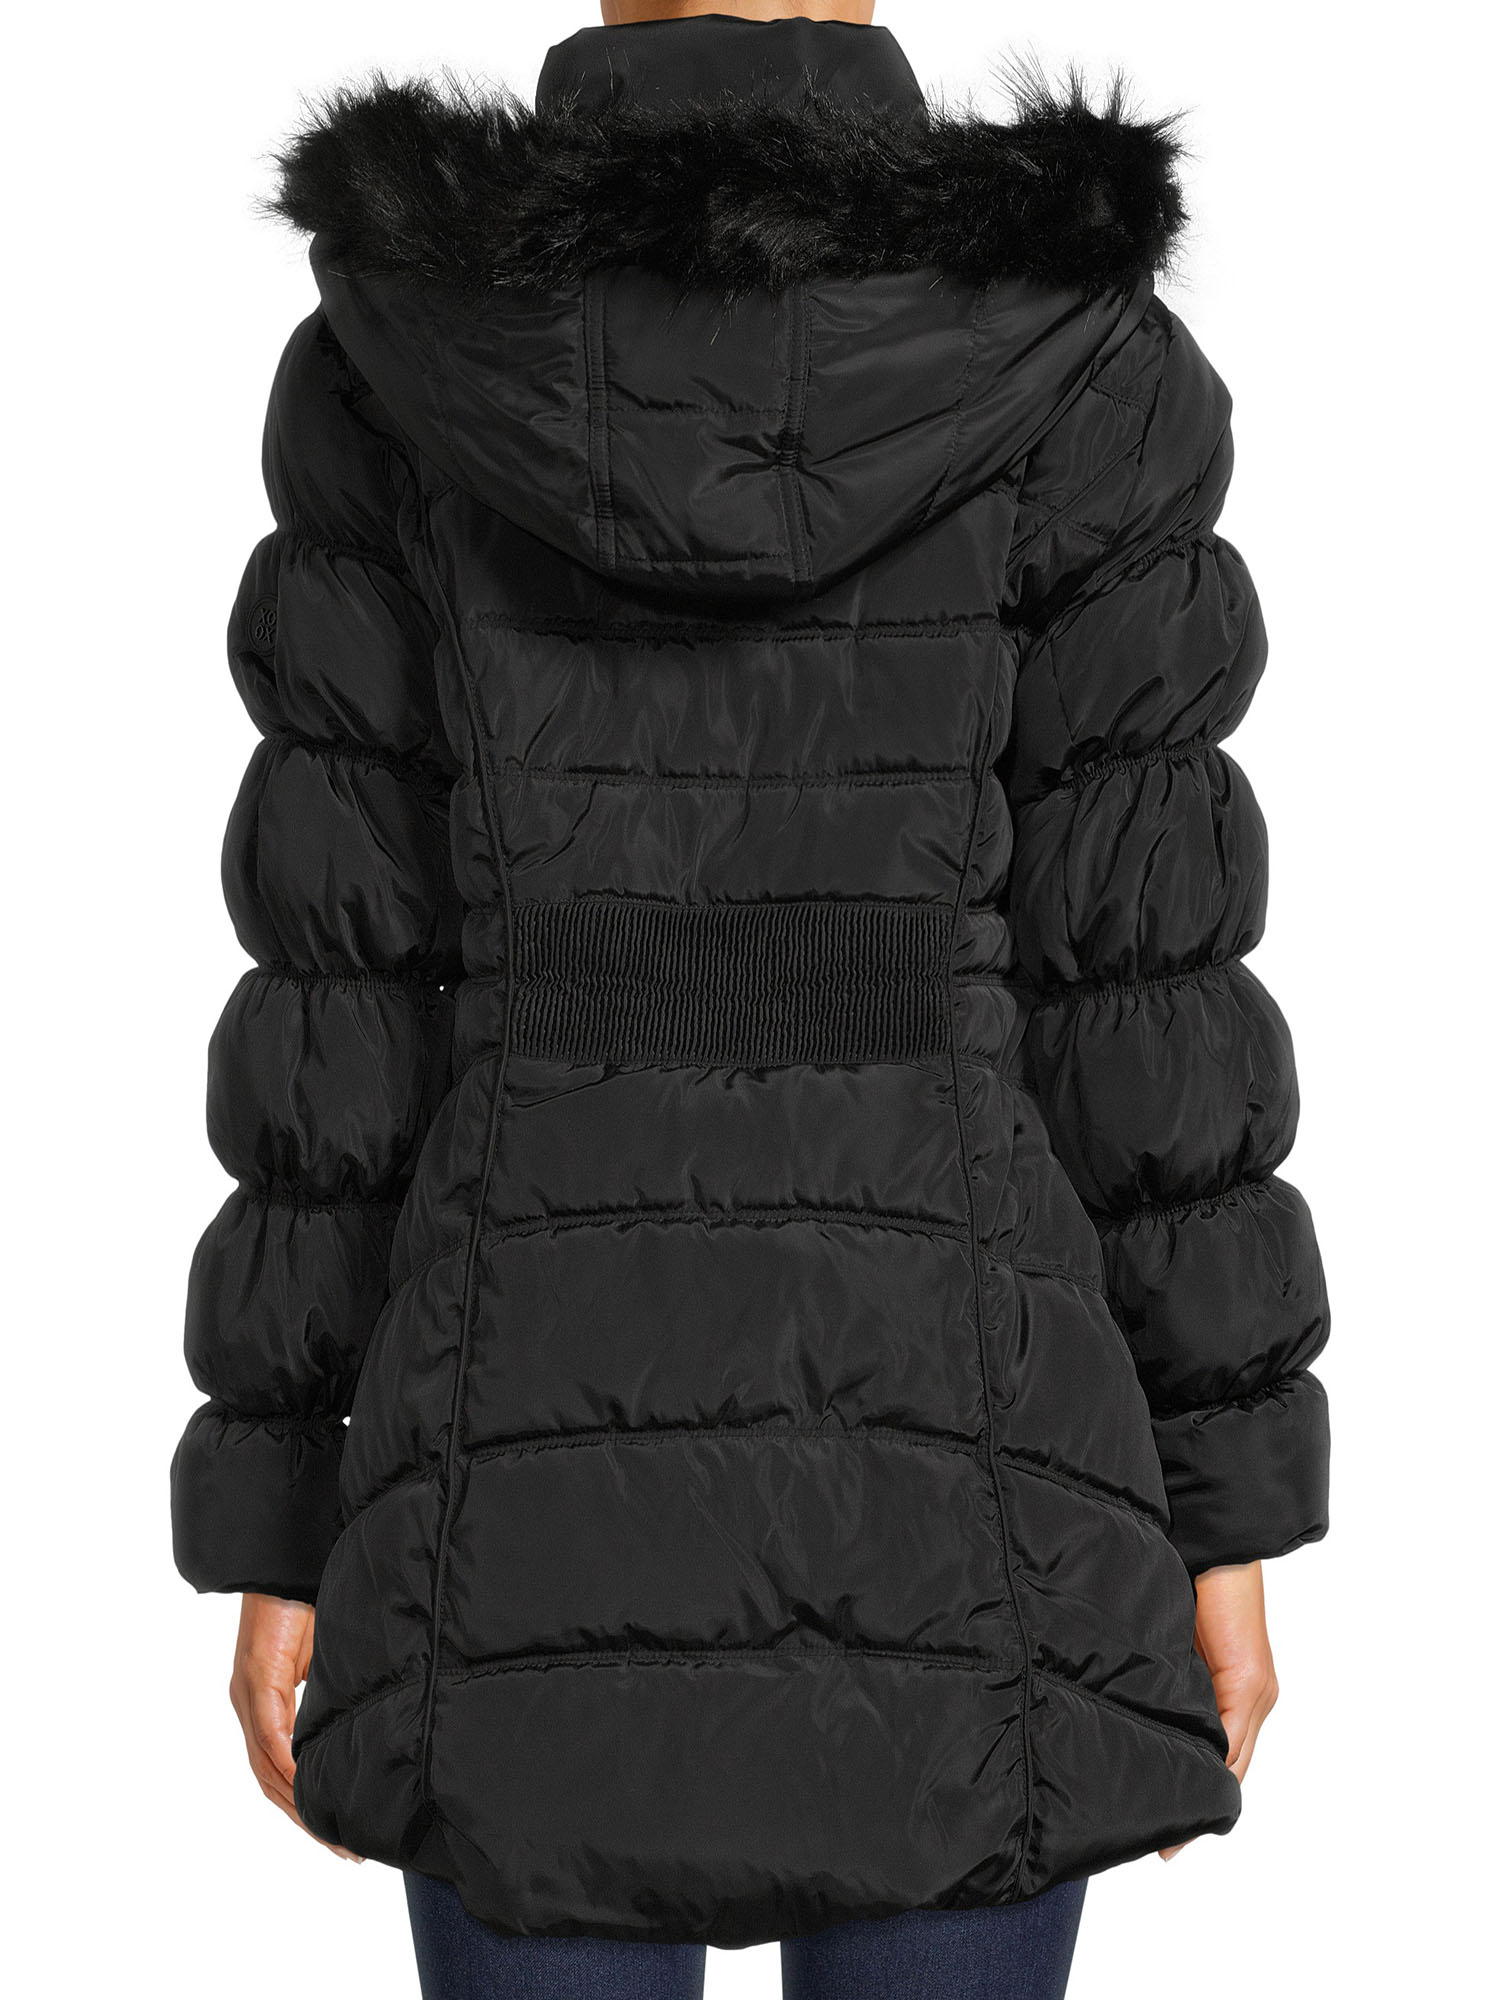 XOXO Women's Puffer Coat with Oversized Hood - image 3 of 5